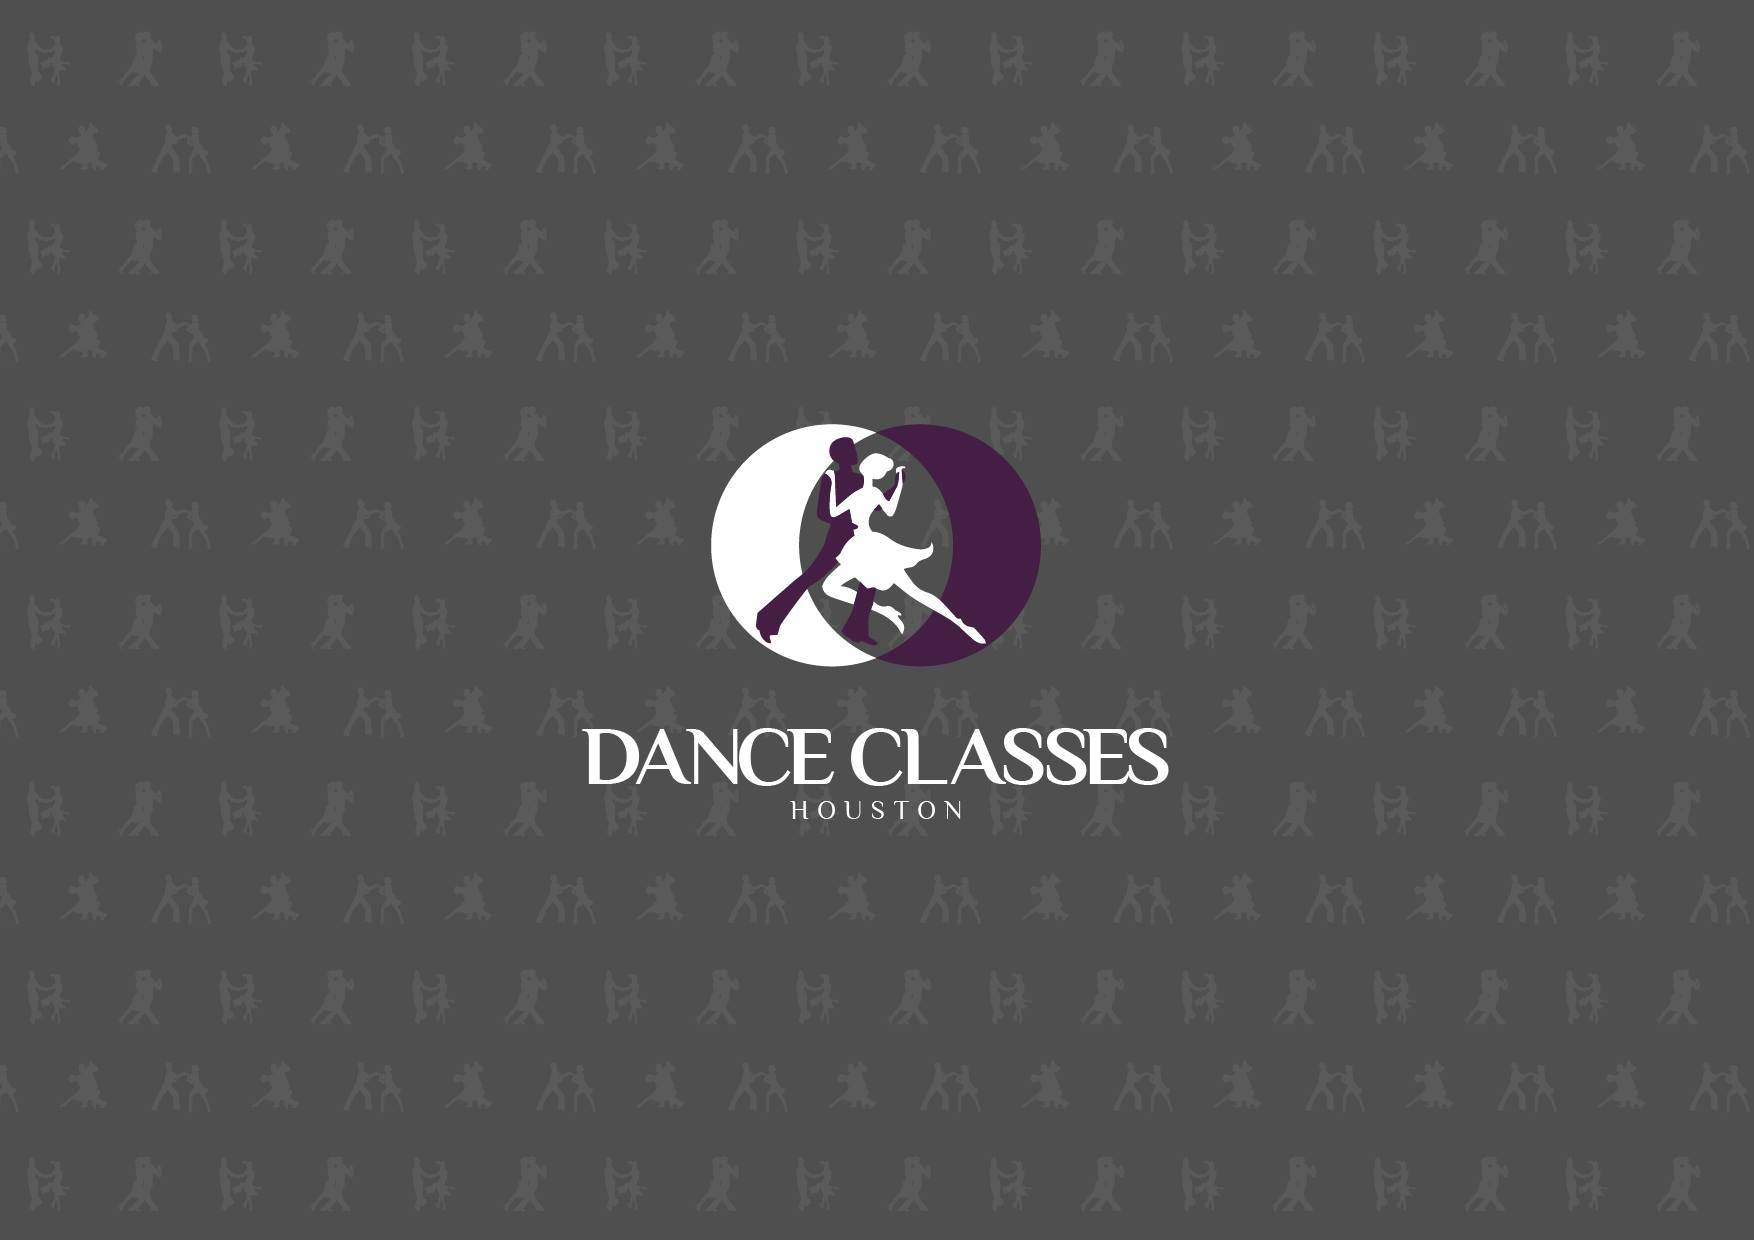 Dance Classes Houston Logo